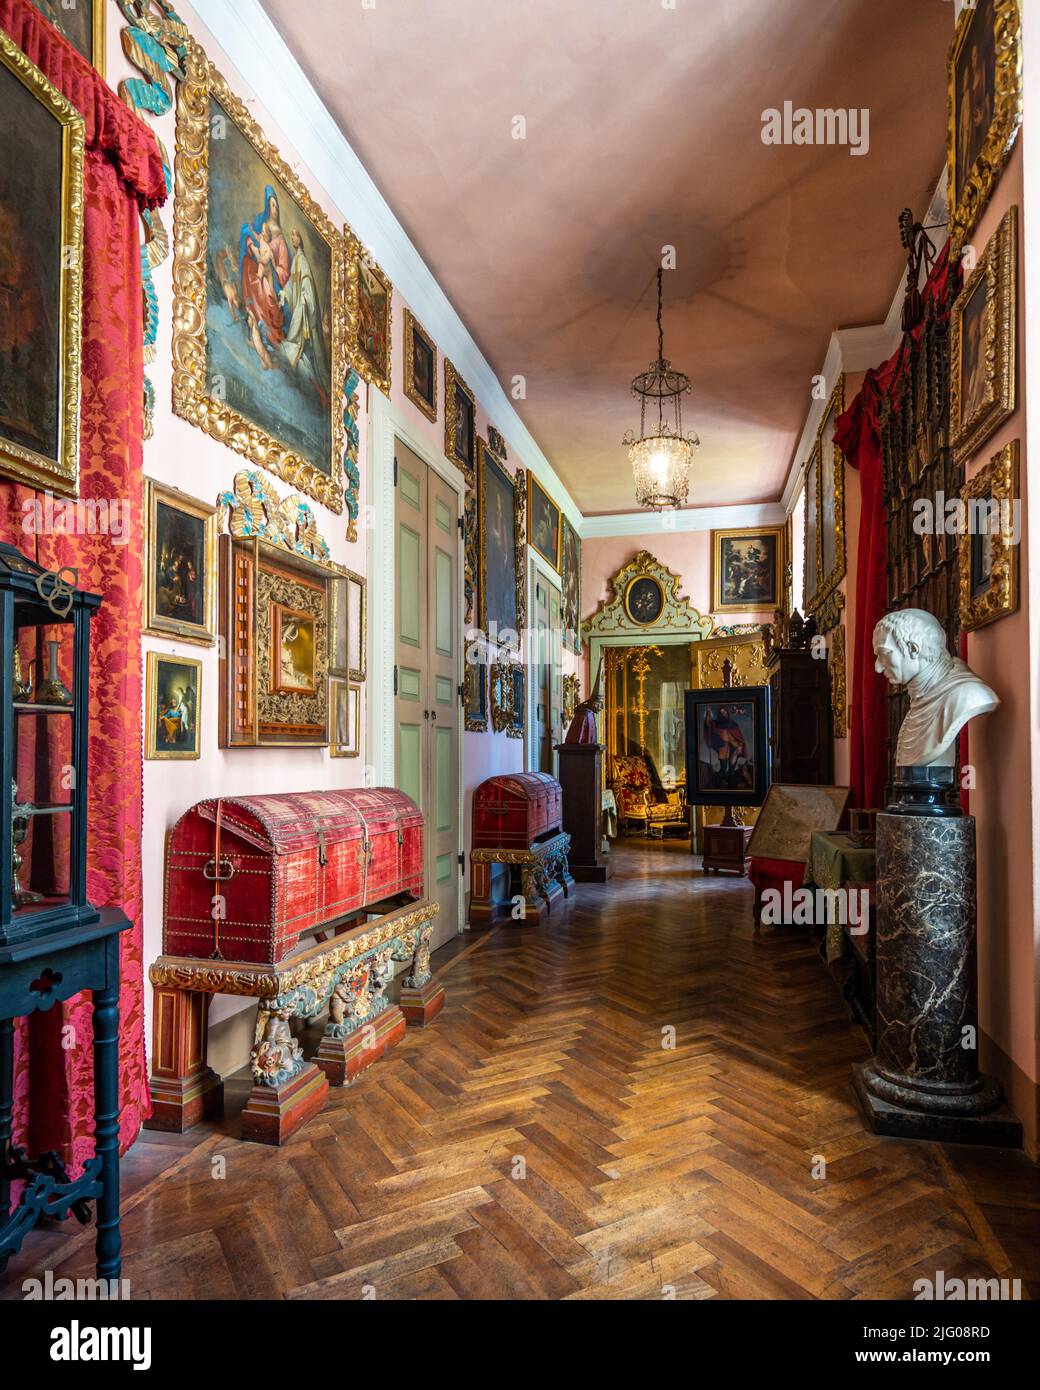 Isola Bella, Stresa, Italy, Apr. 2022 - interni di lusso di Palazzo Borromeo, palazzo in stile barocco costruito nel 17th secolo Foto Stock